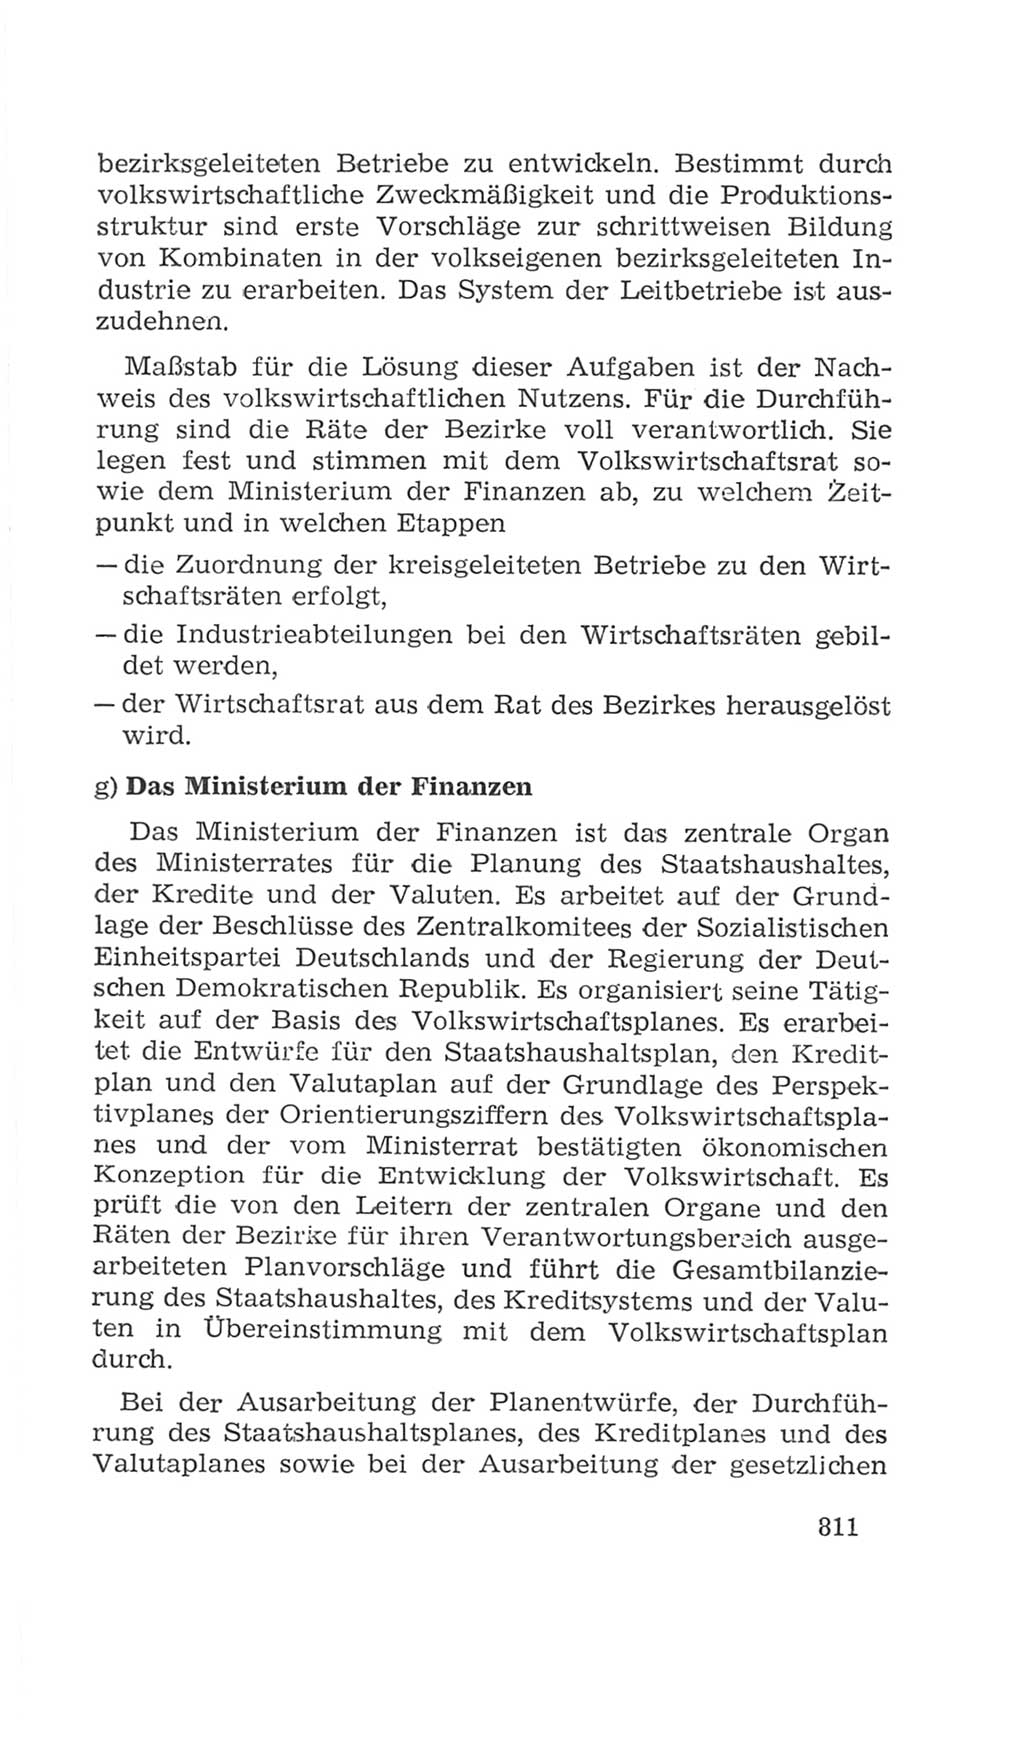 Volkskammer (VK) der Deutschen Demokratischen Republik (DDR), 4. Wahlperiode 1963-1967, Seite 811 (VK. DDR 4. WP. 1963-1967, S. 811)